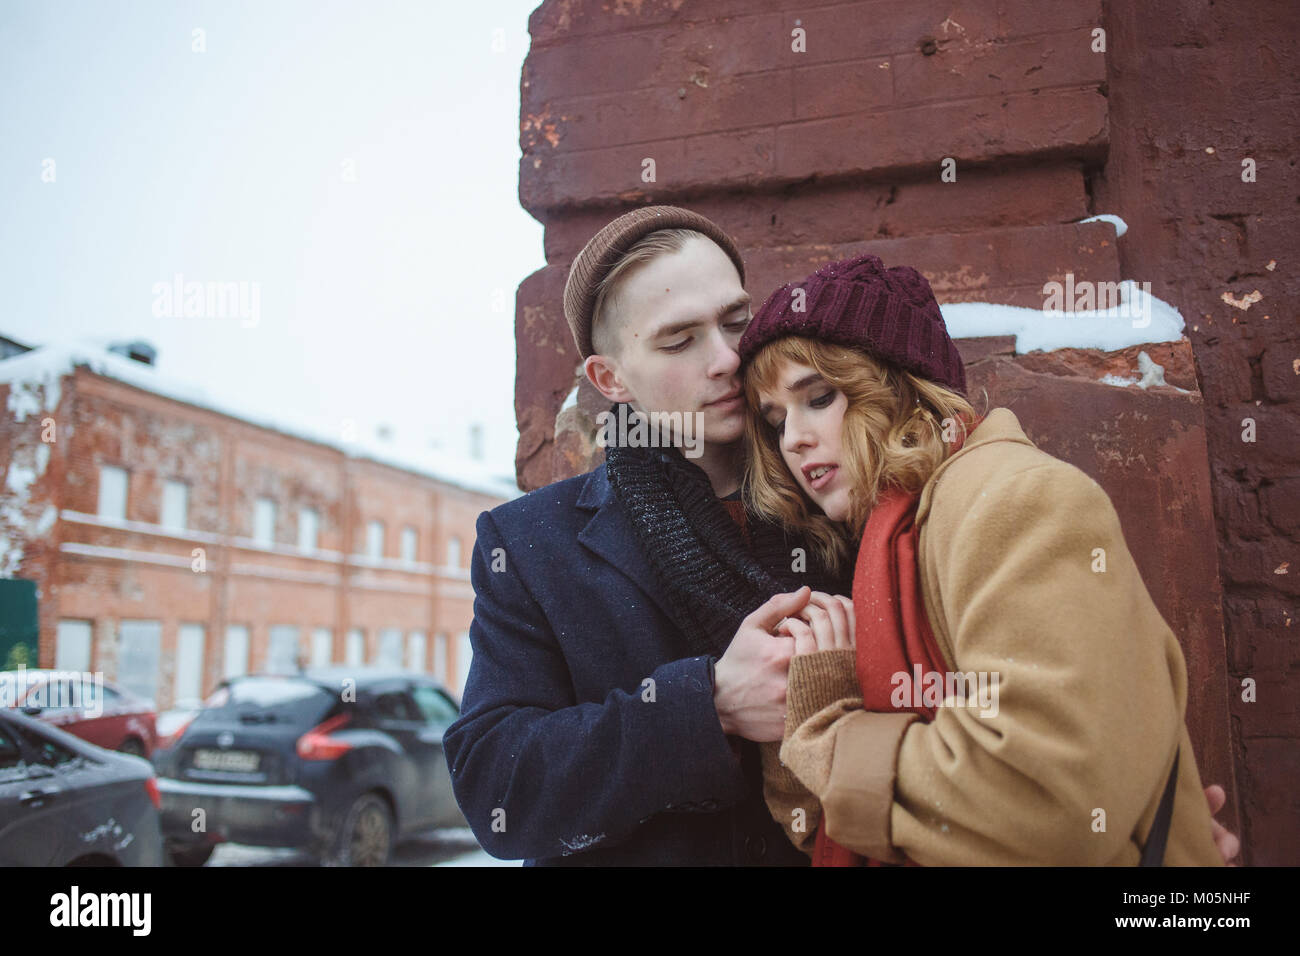 Young man and woman embracing près de brick coin de bâtiment. Rue d'hiver. La vie privée dans les endroits reculés de la grande ville Banque D'Images